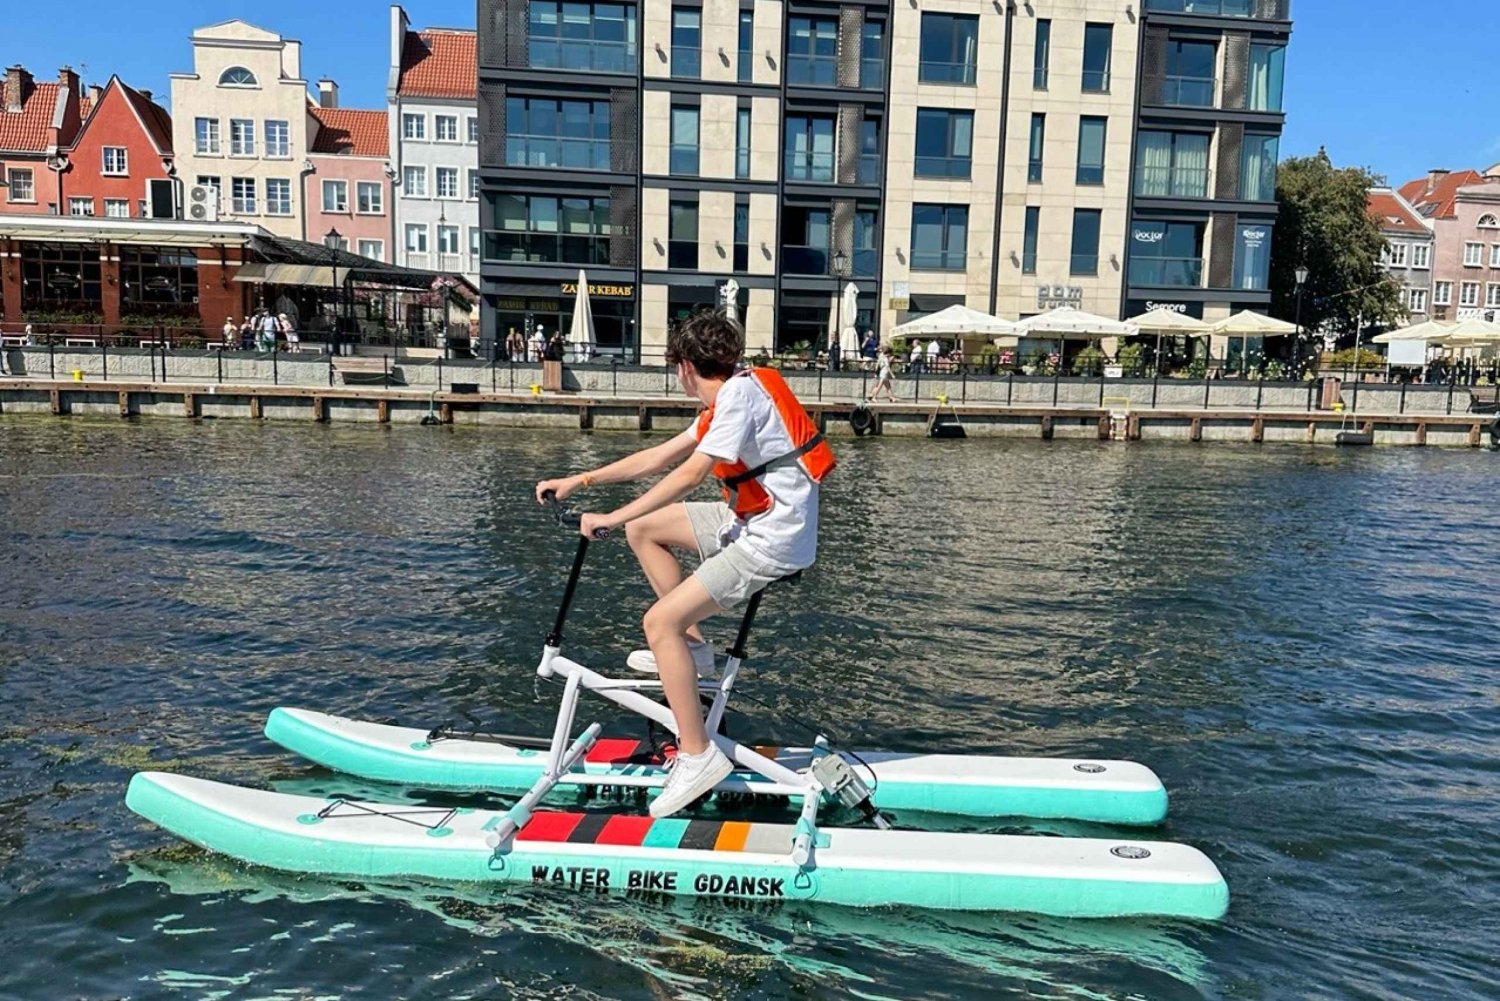 Gdansk : la vraie location d'expérience de Water Bike Gdansk